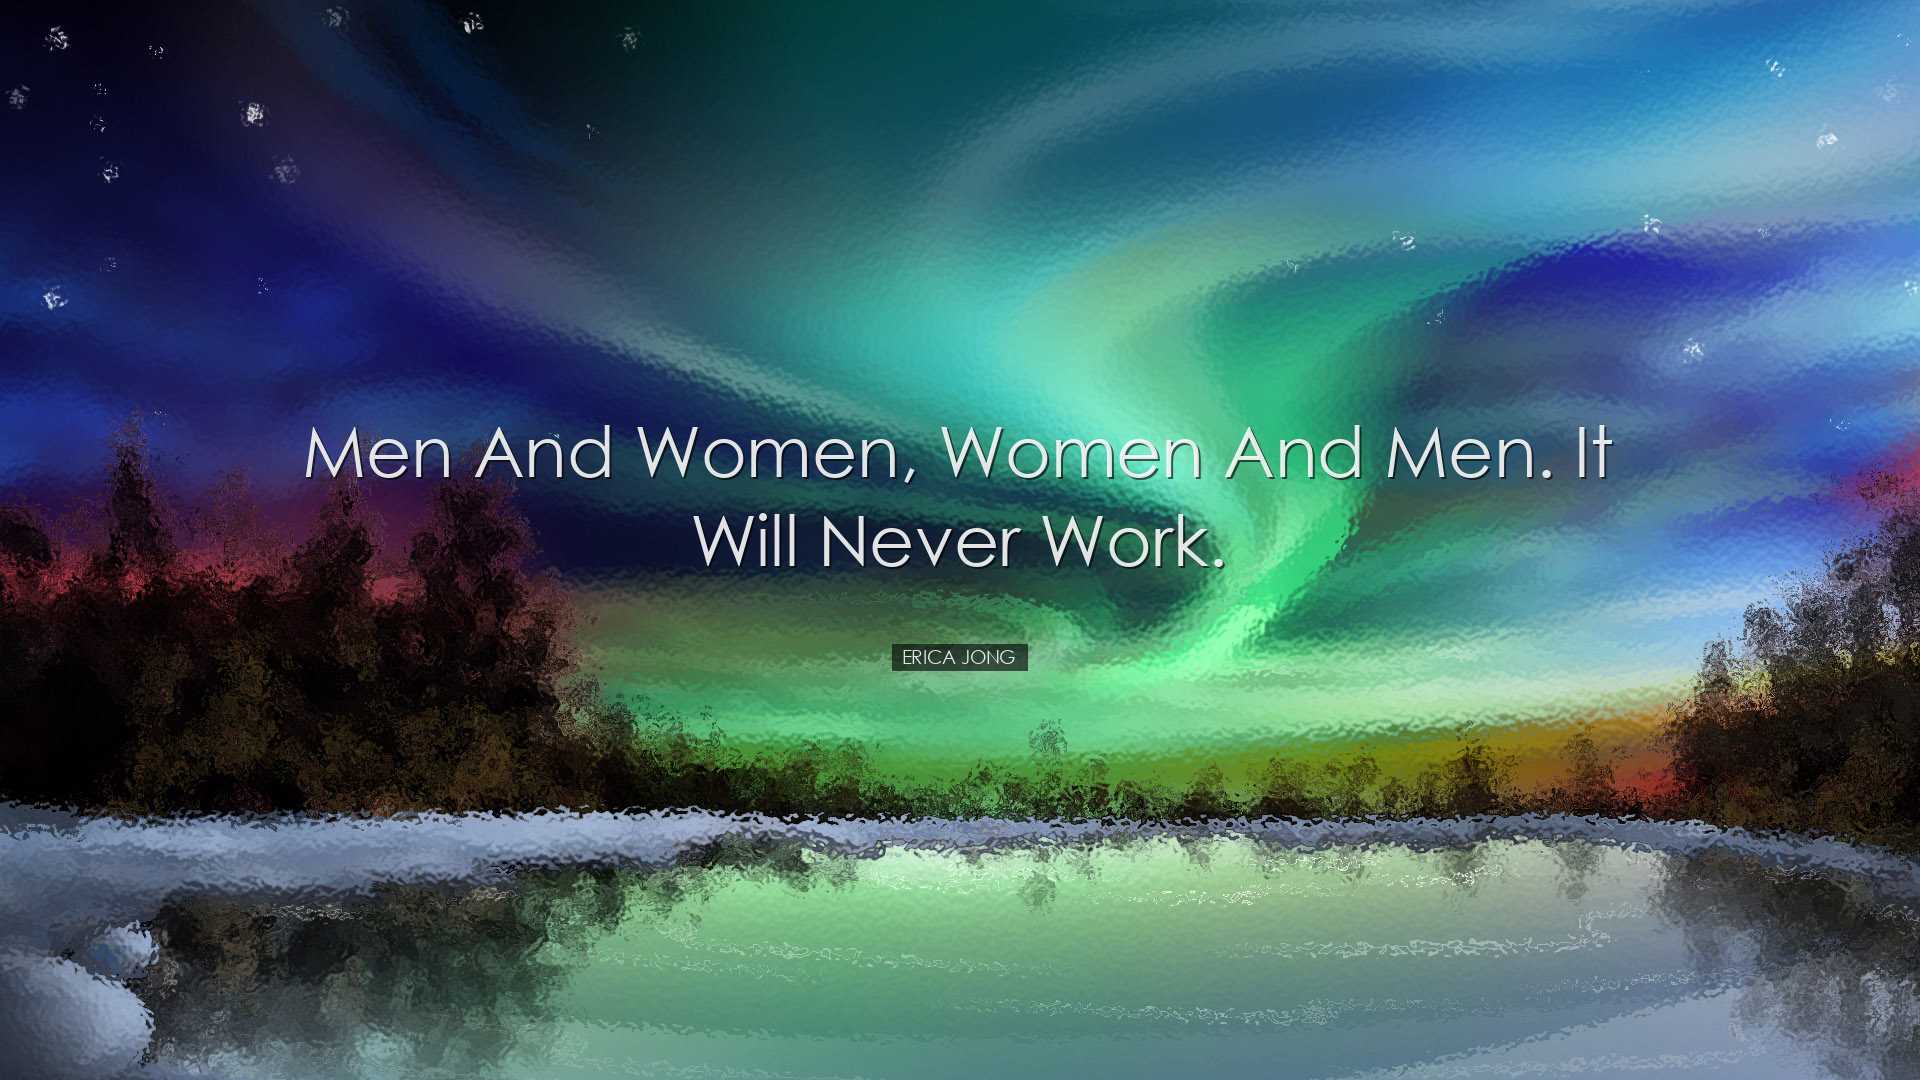 Men and women, women and men. It will never work. - Erica Jong